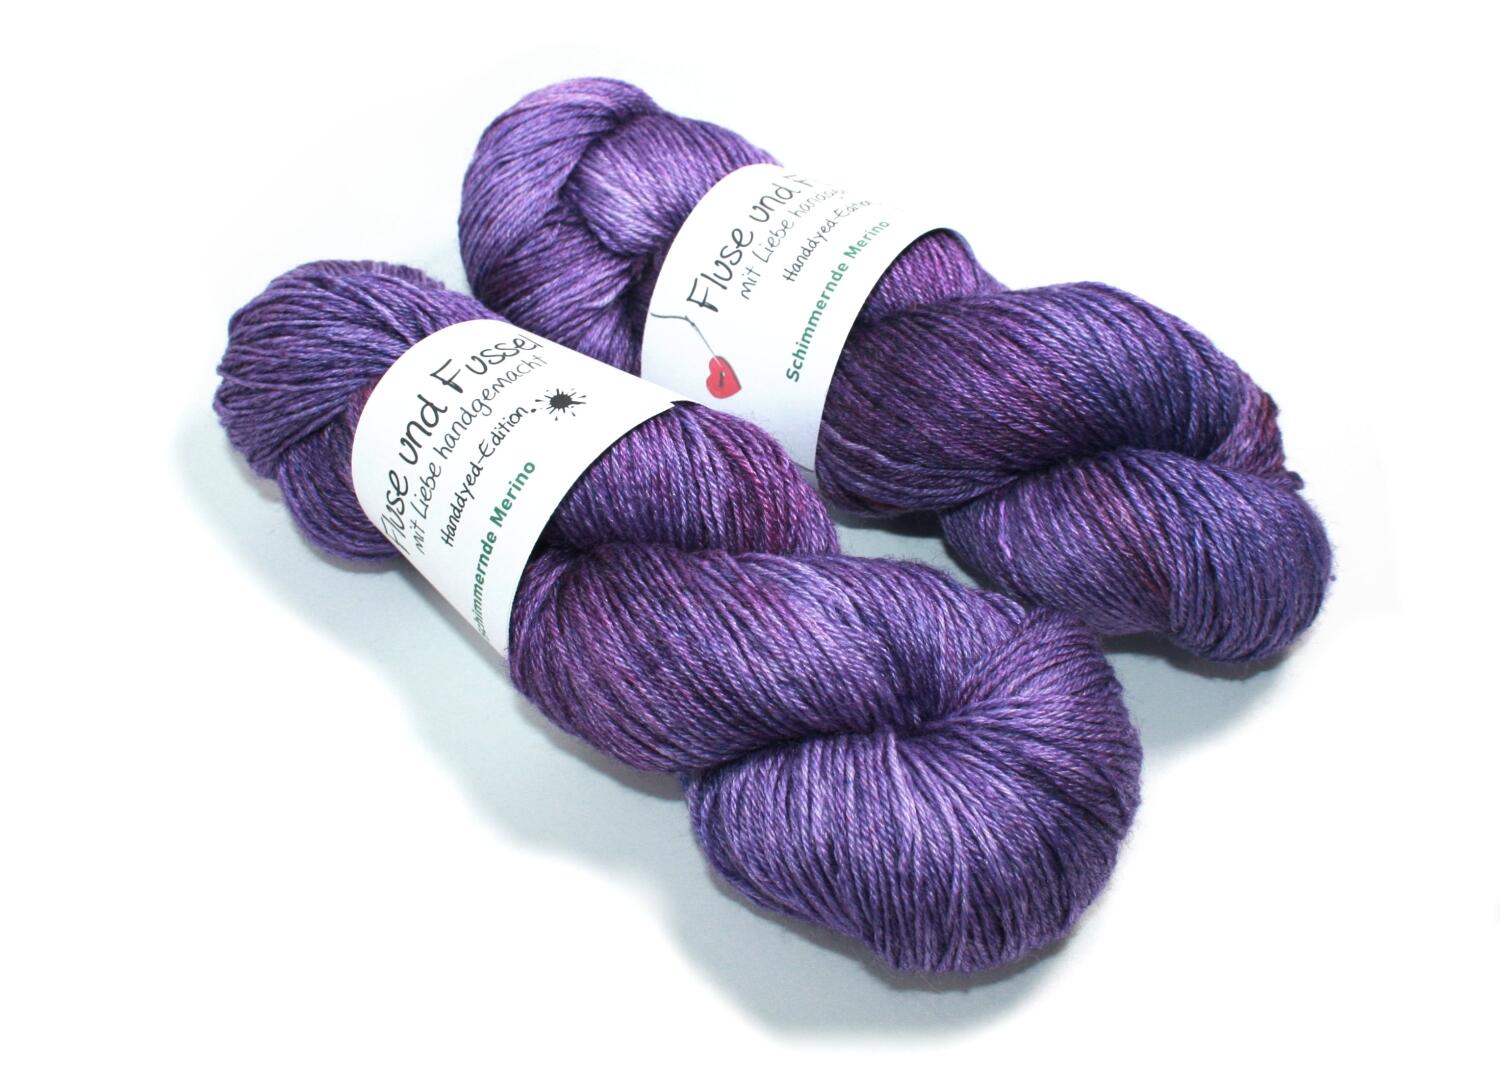 FuF Handdyed-Edition - Schimmernde Merino handgefärbt 100g Farbe: Lavendel